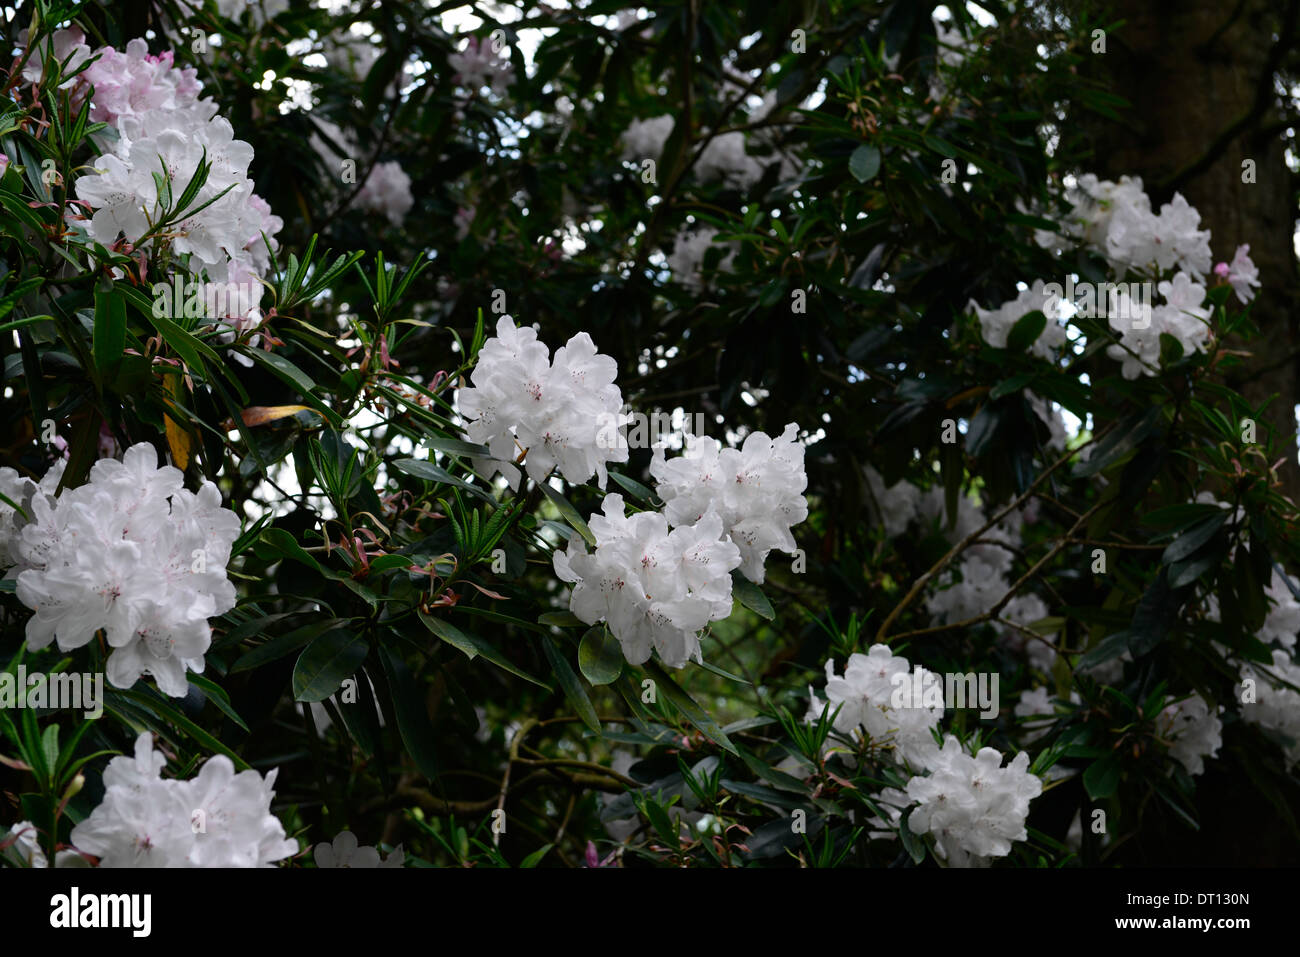 Rhododendron bianco perla fiore fiori fioritura bloom tree Foto Stock